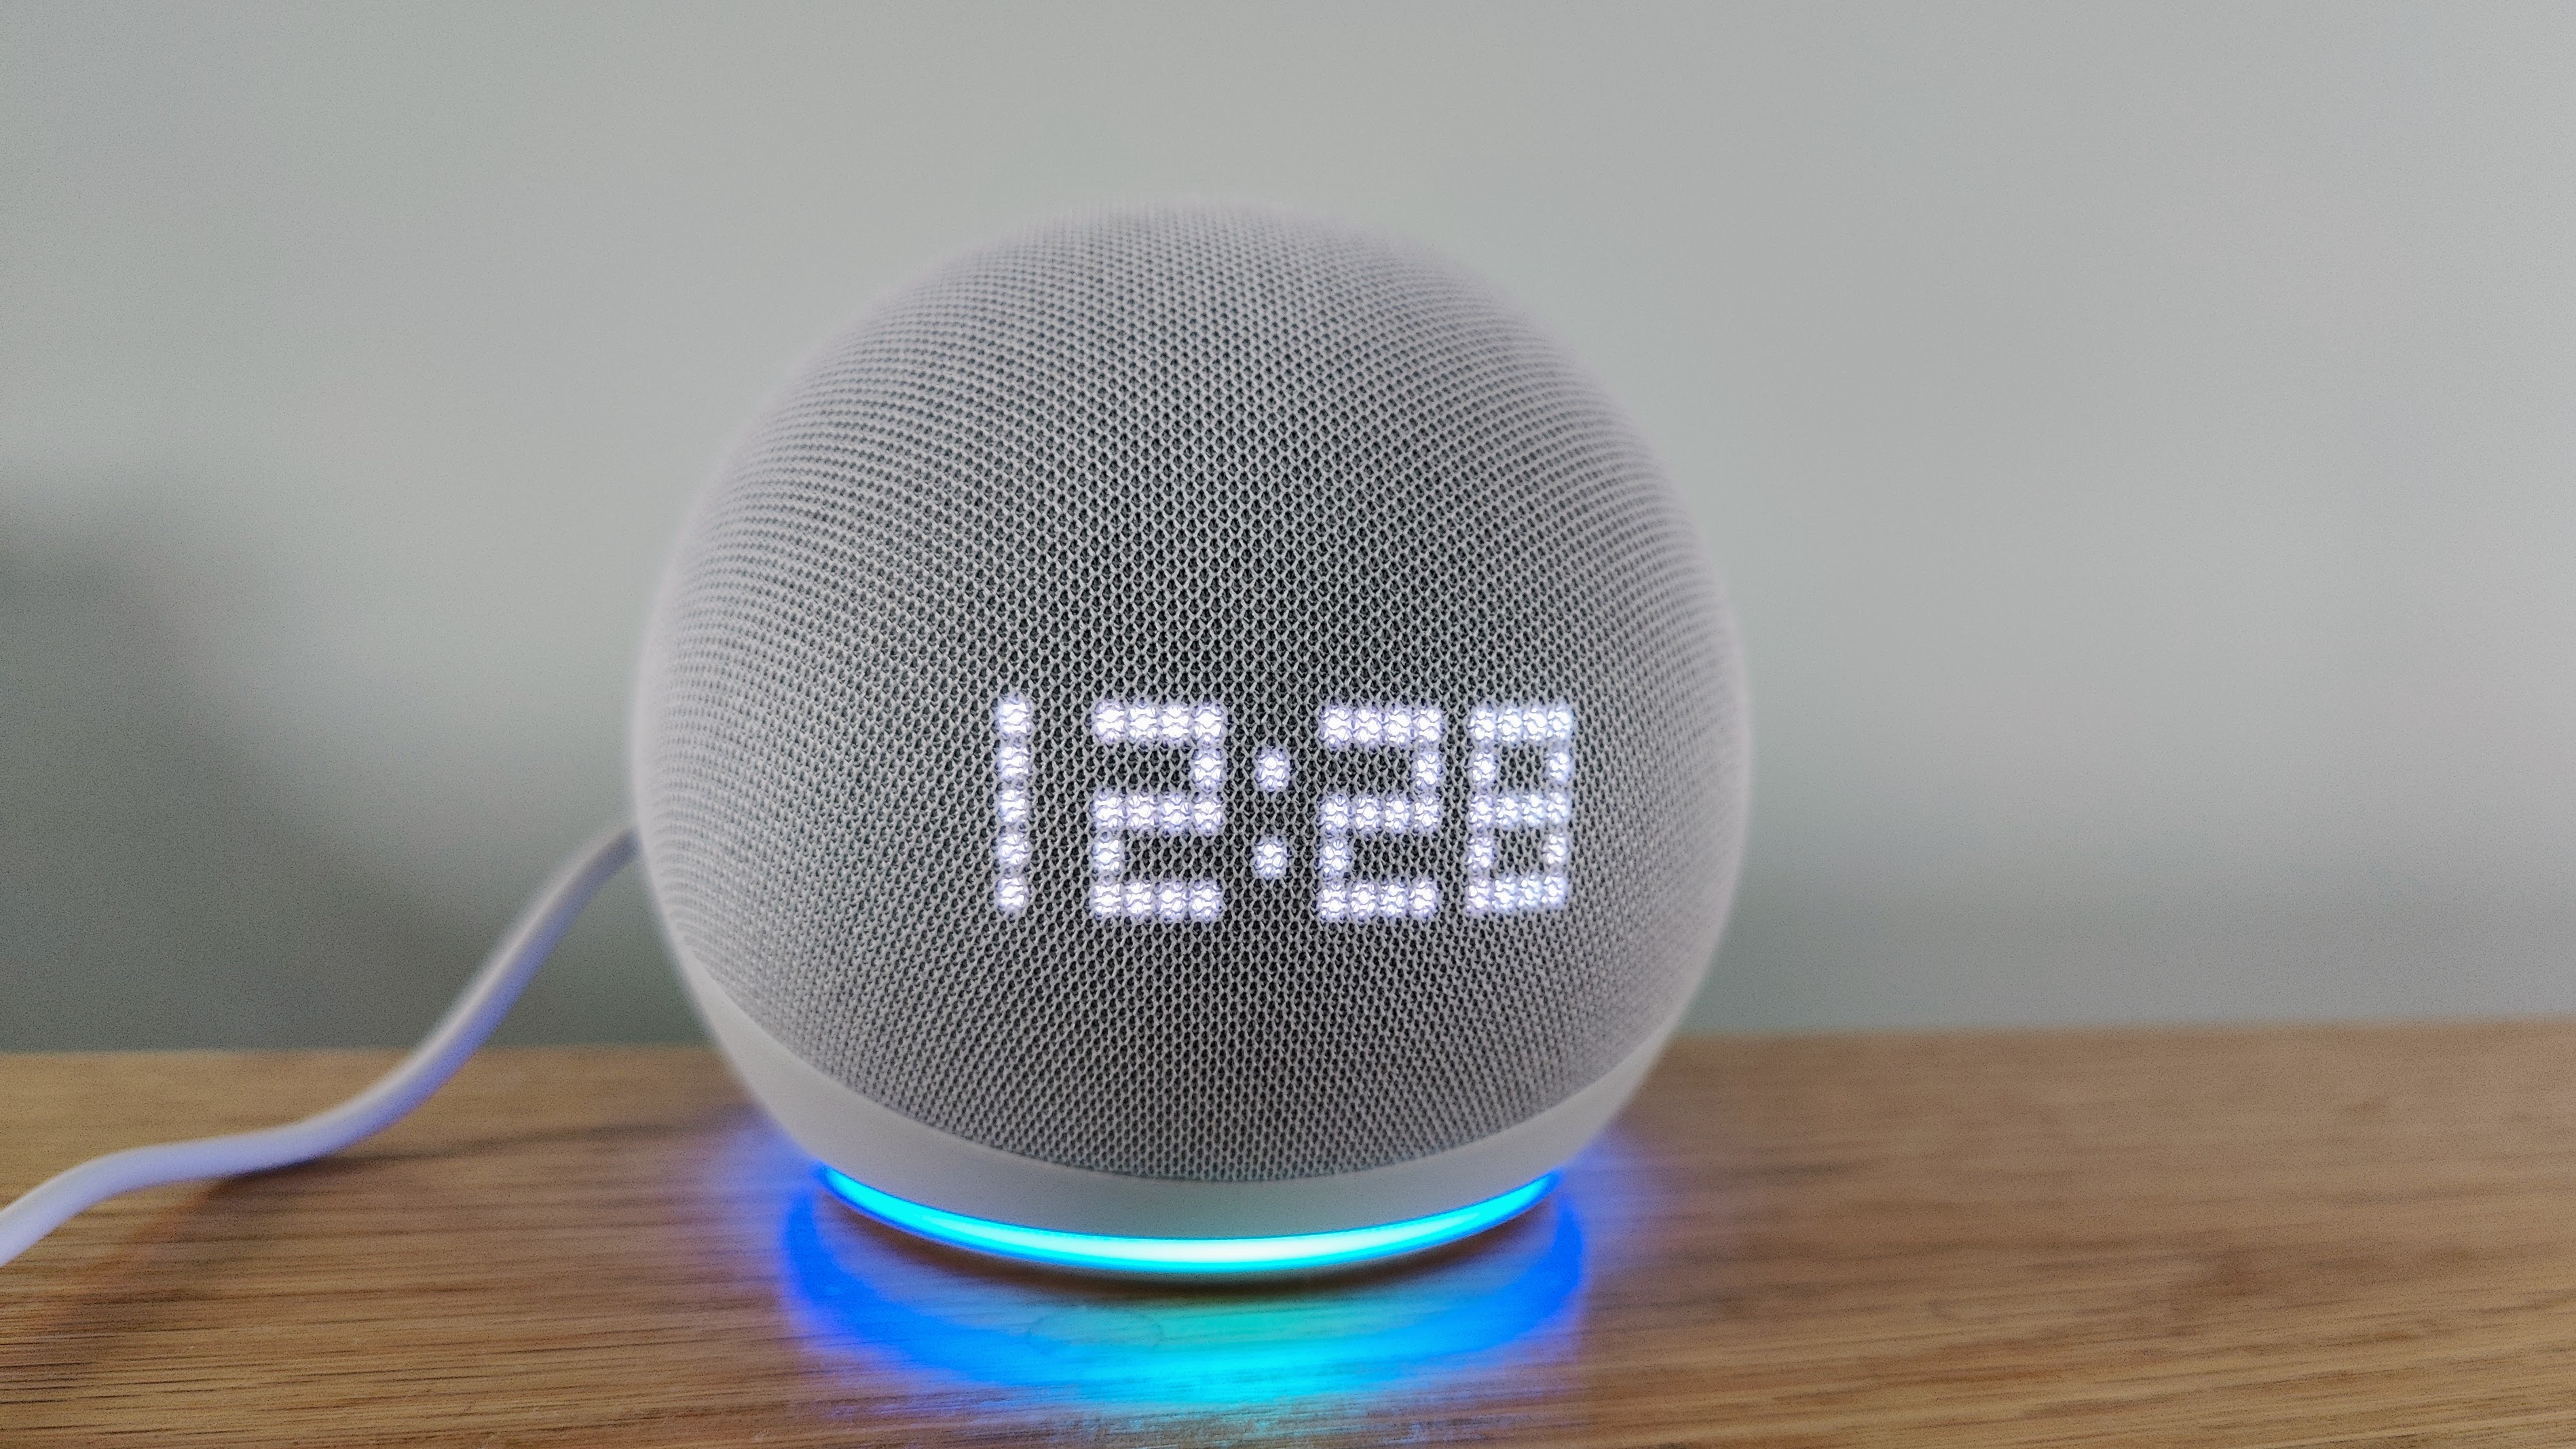 Echo Pop 1st Gen Smart Speaker  With Alexa Charcoal, Alexa  Built-in, Alarm Clock, Voice Control